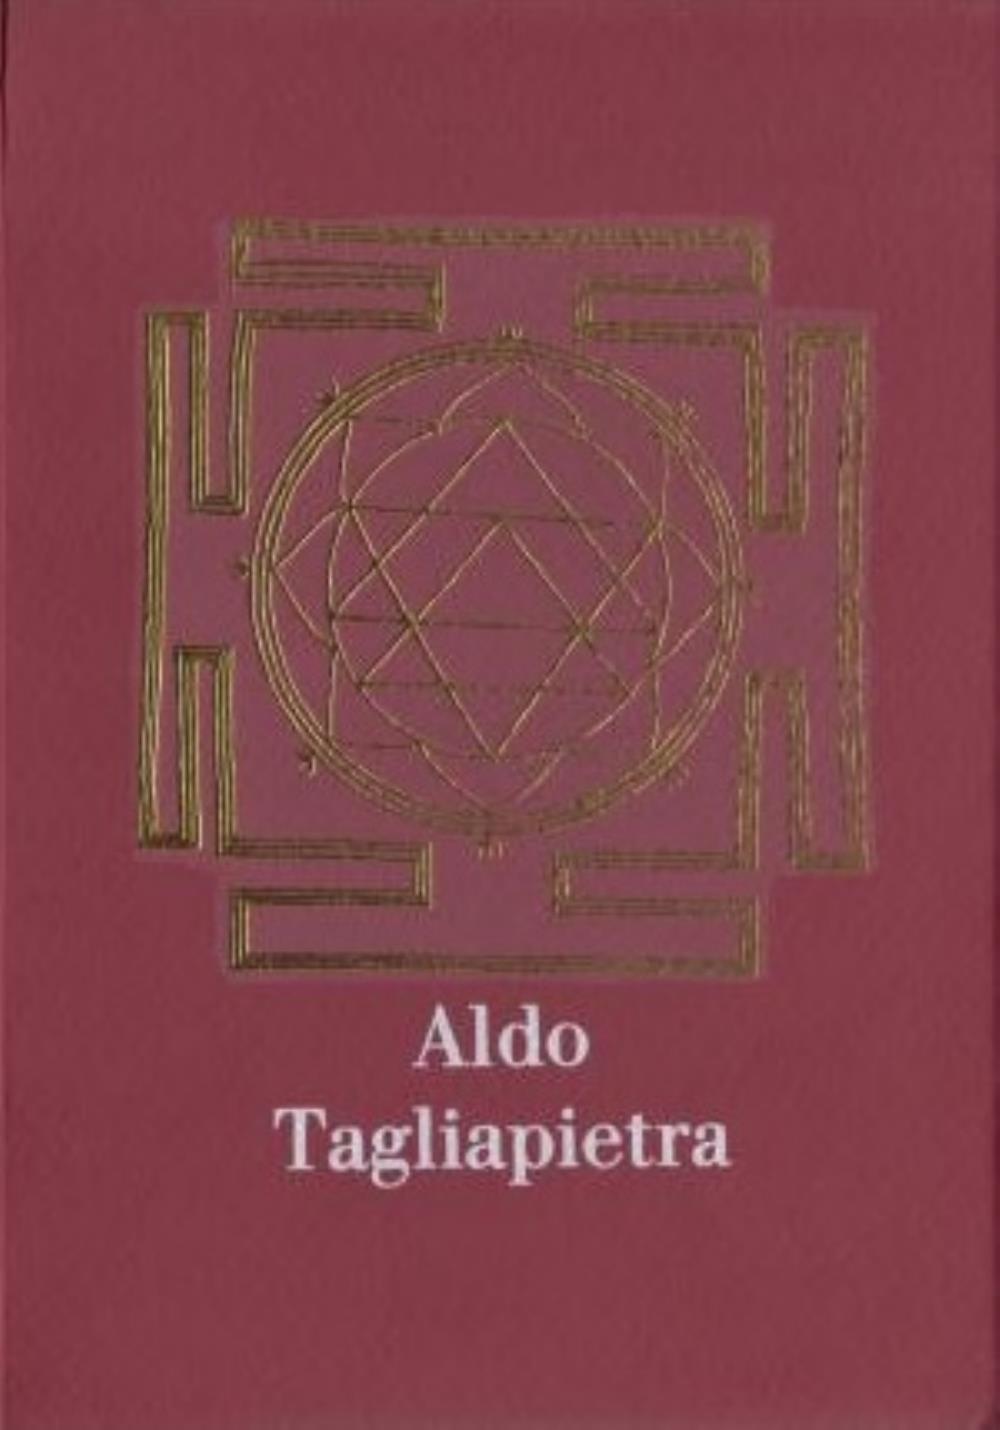  Il Viaggio by TAGLIAPIETRA, ALDO album cover